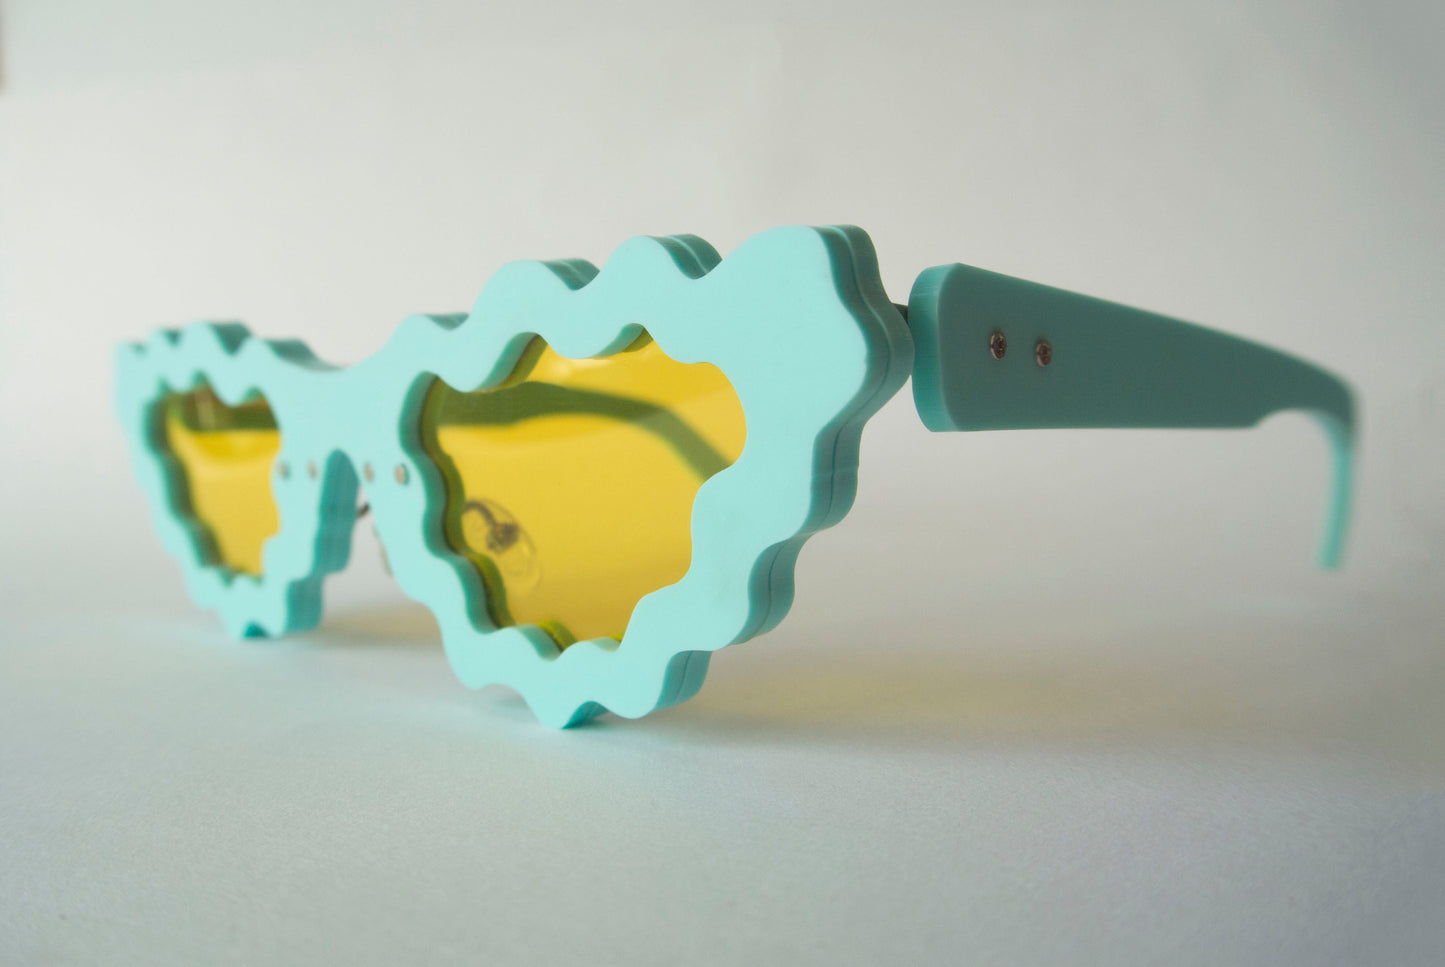 fun sunglasses designs by anna mulhearn